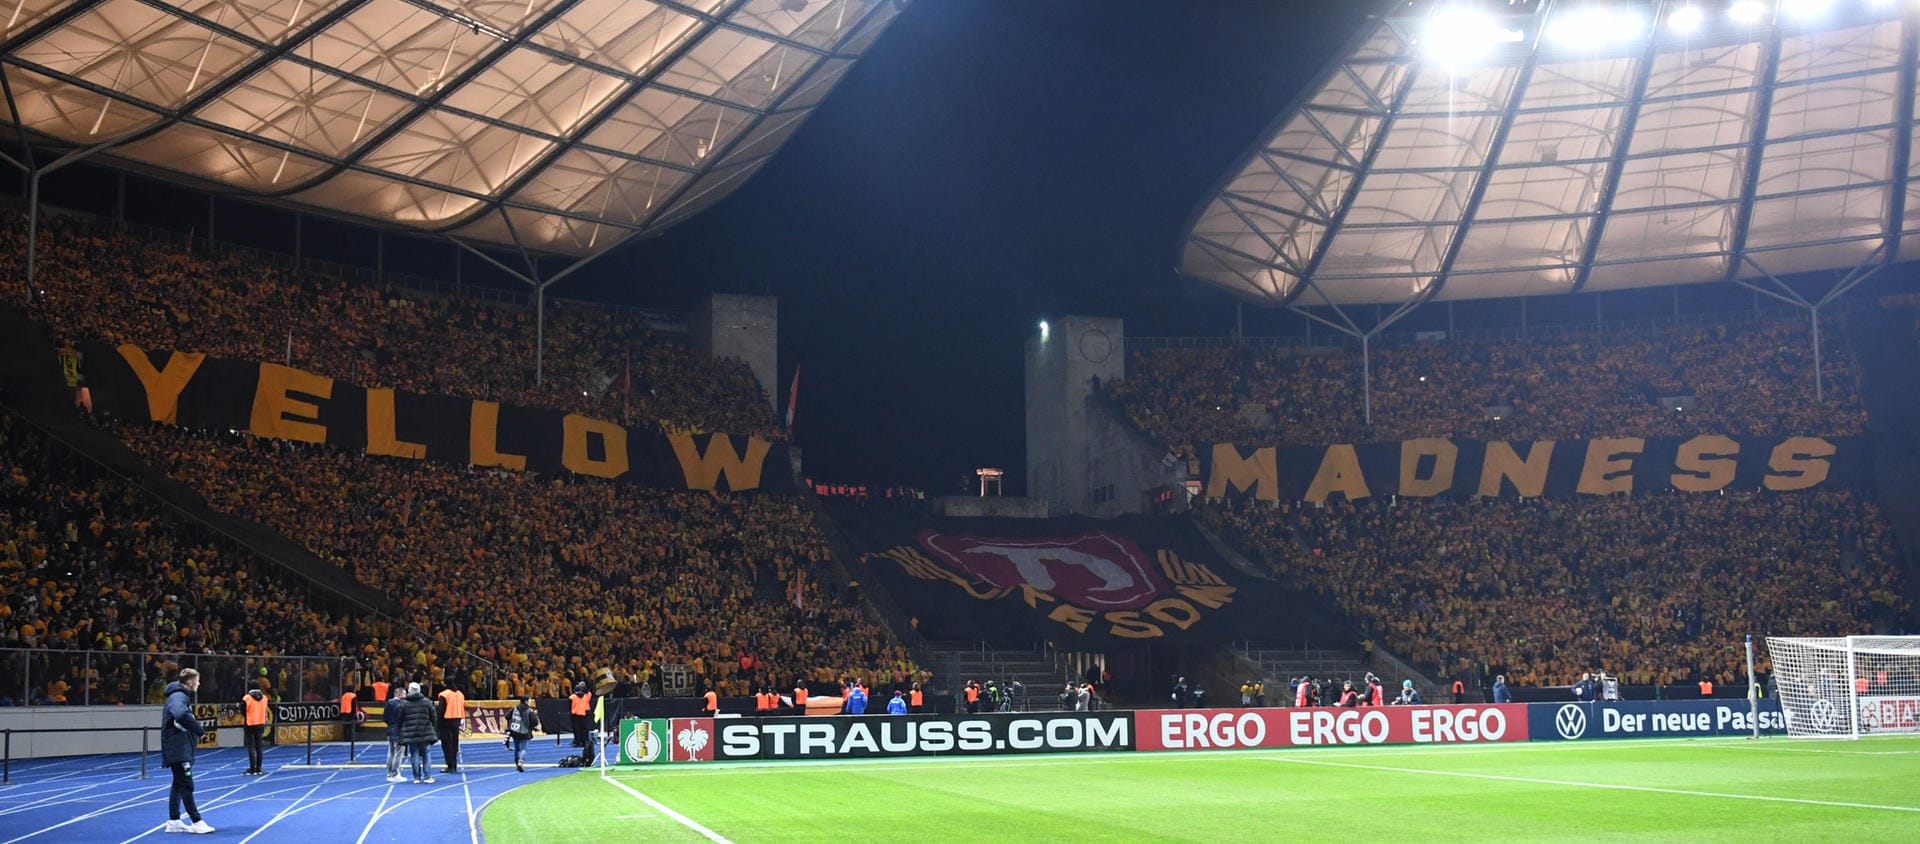 Im DFB-Pokal wird das Olympiastadion zum Schauplatz für eine atemberaubende Stimmung. Das liegt vor allem an den über 30.000 Gästefans, die die "Yellow Madness" ausrufen. Sie zündeten aber...